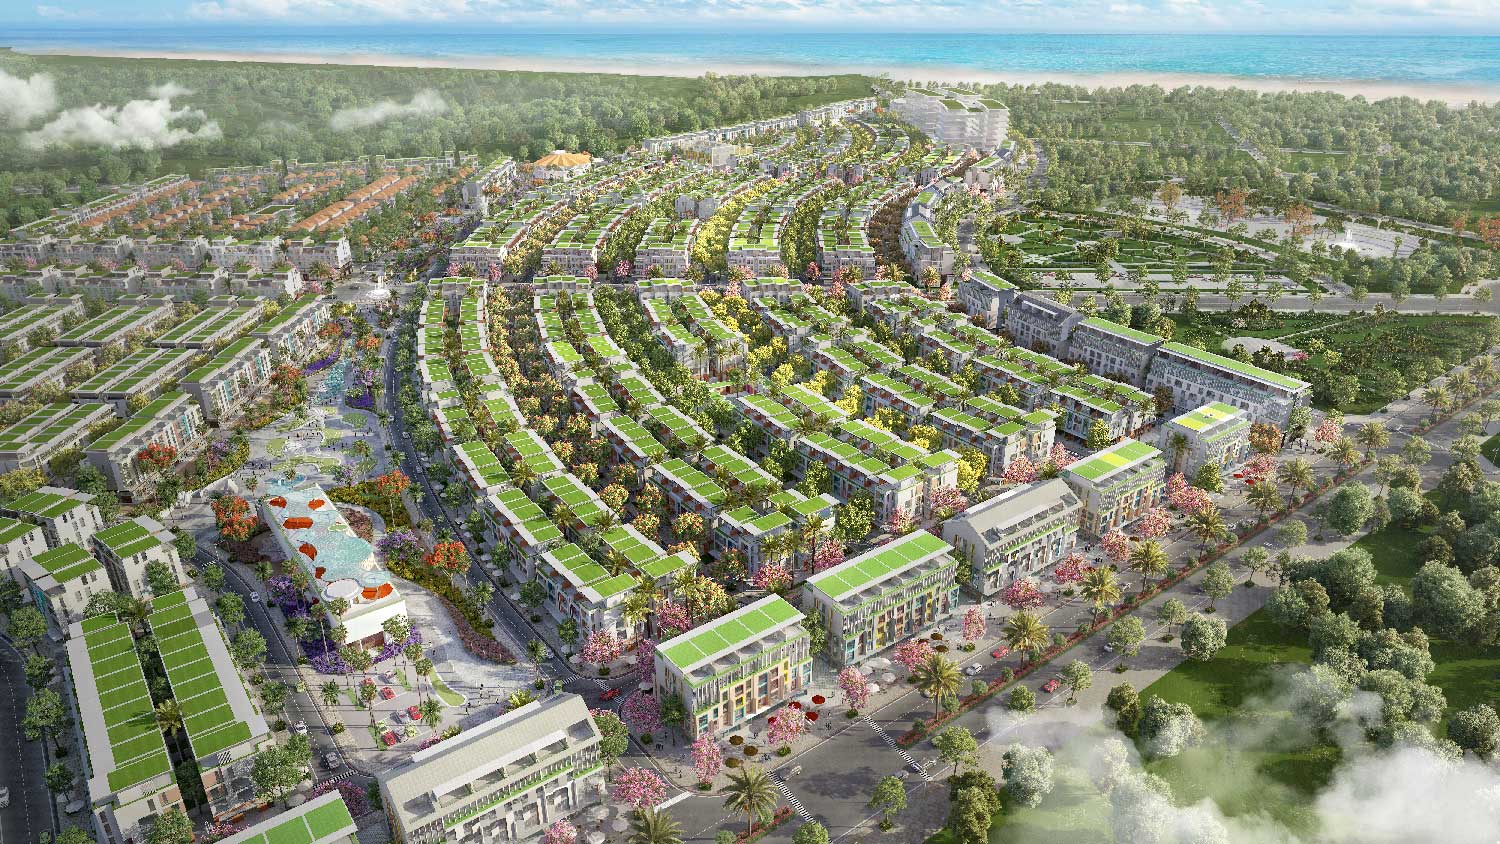 Báo Giá Meyhomes Capital Phú Quốc ⚡️ Cập Nhật Mới Nhất 2022